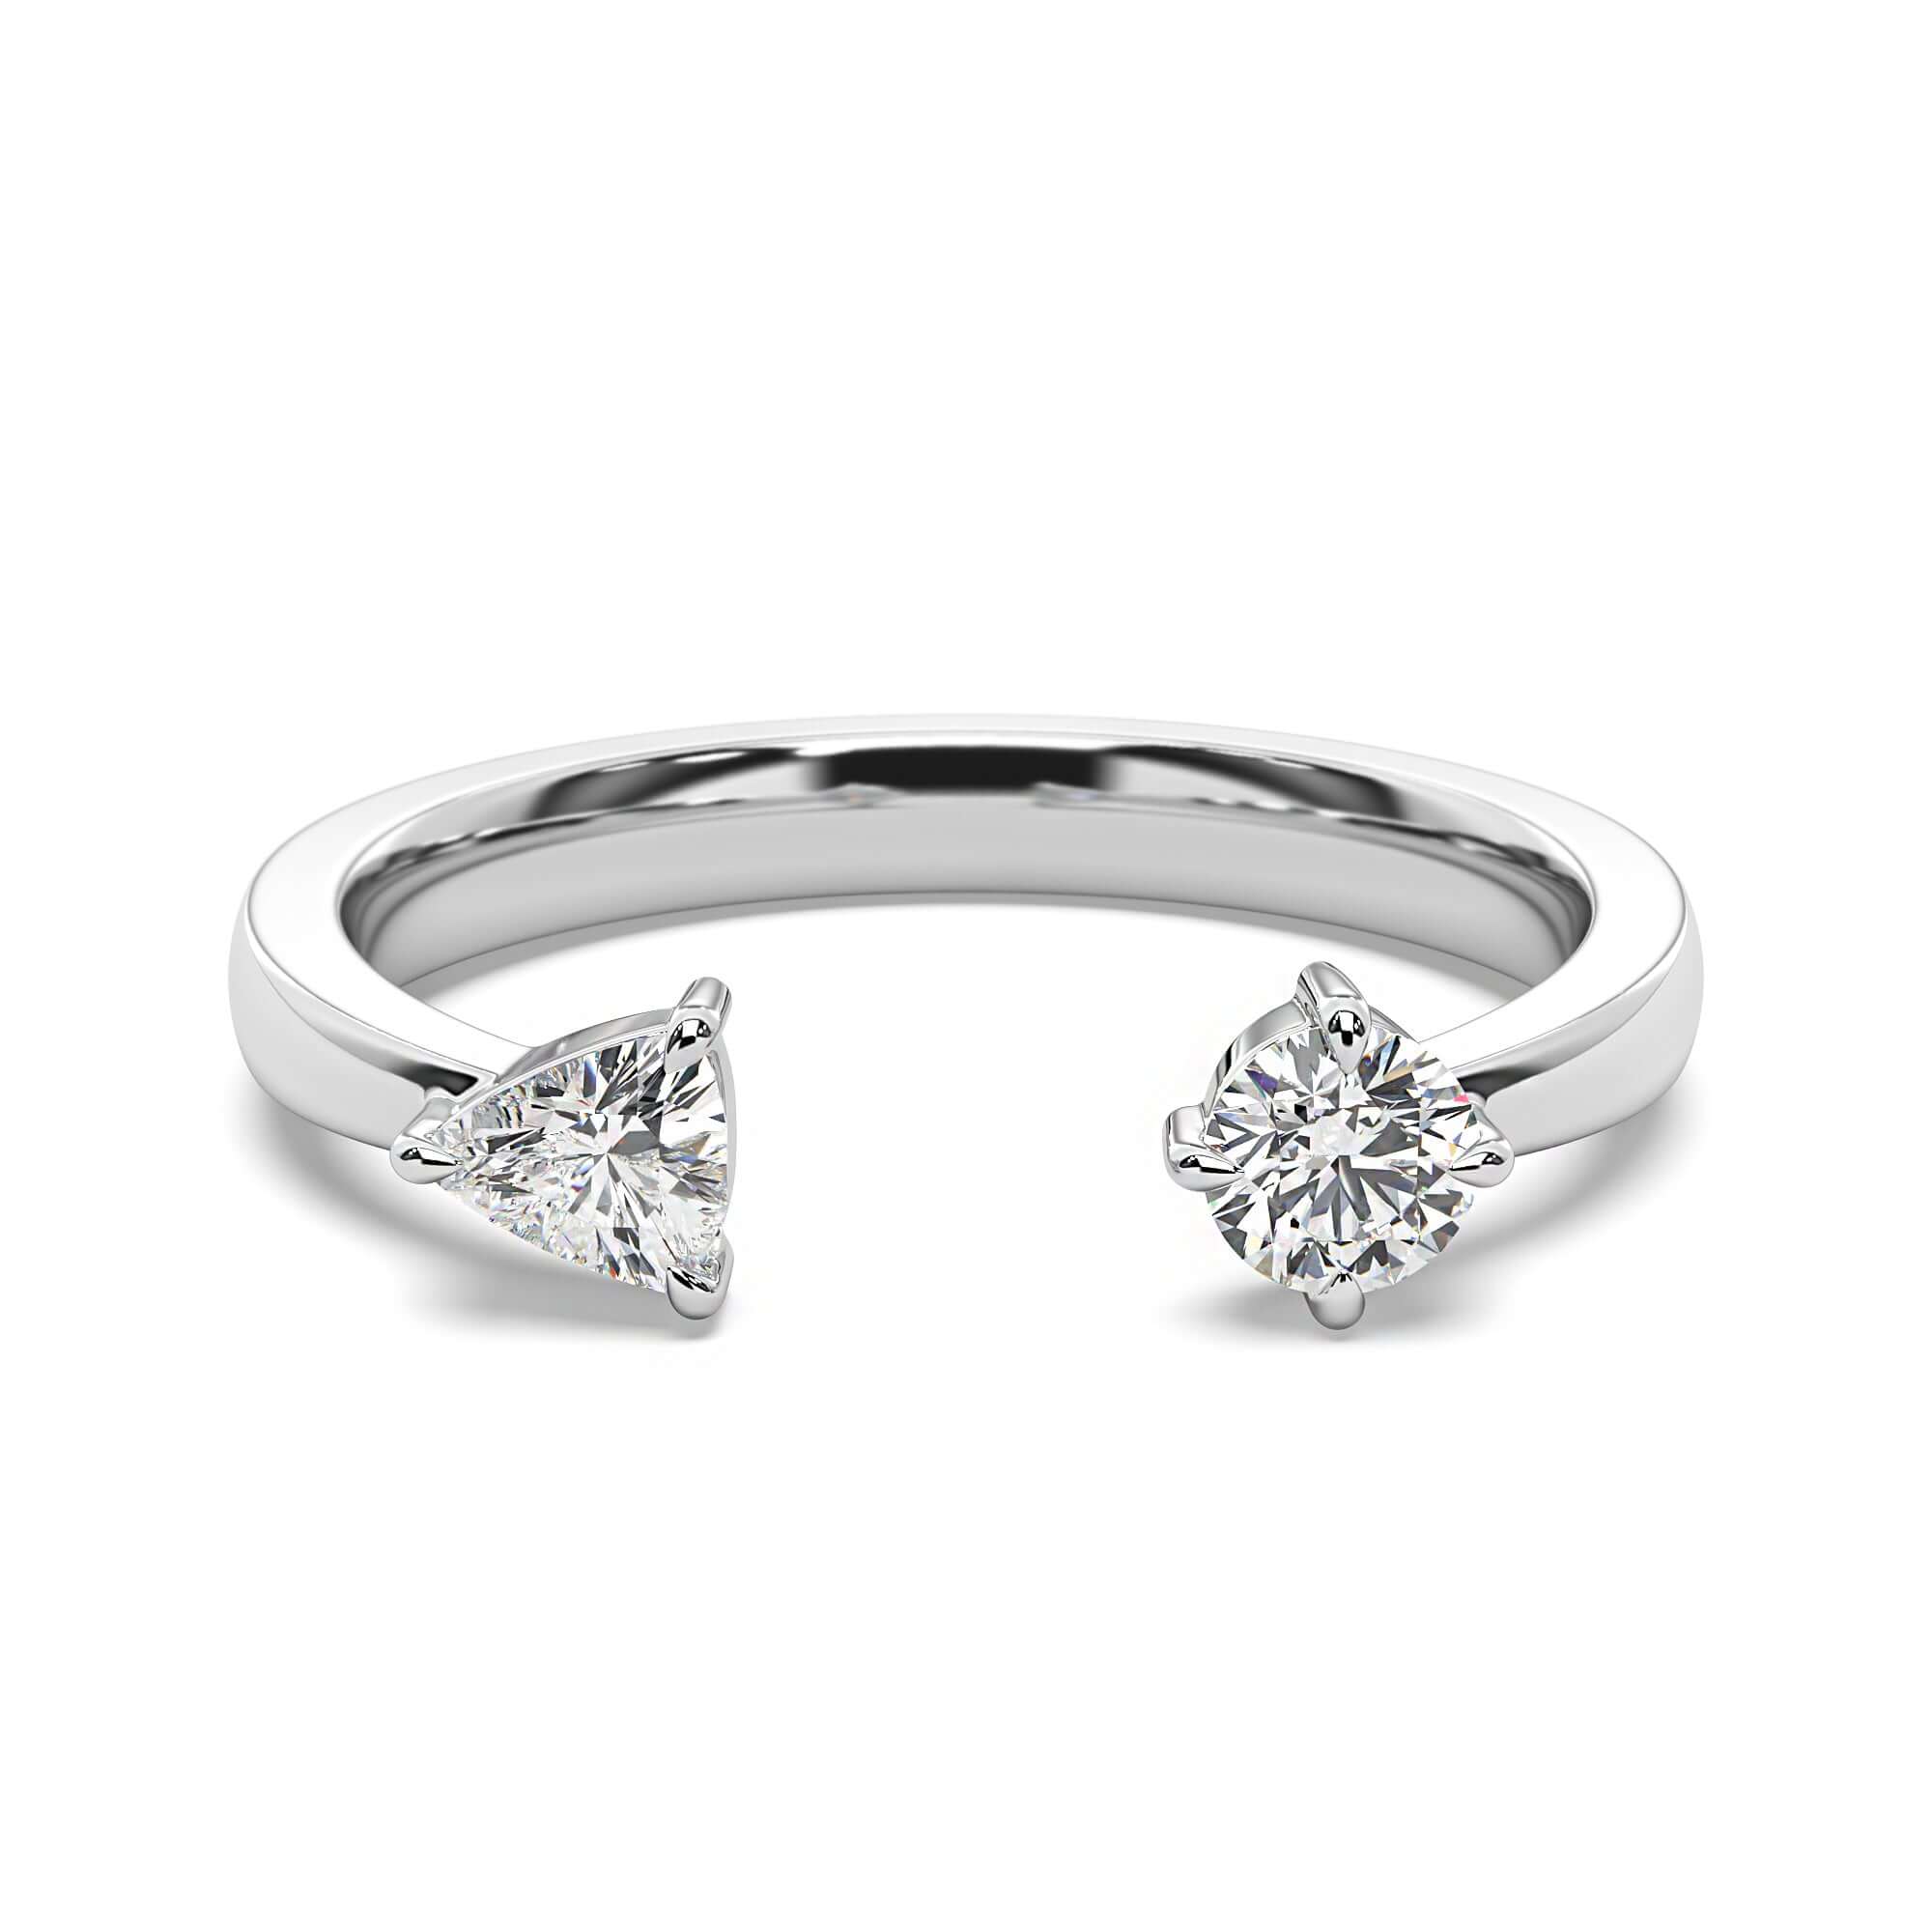 Petite Quinn - Round Brilliant & Trillion Diamond Engagement Ring